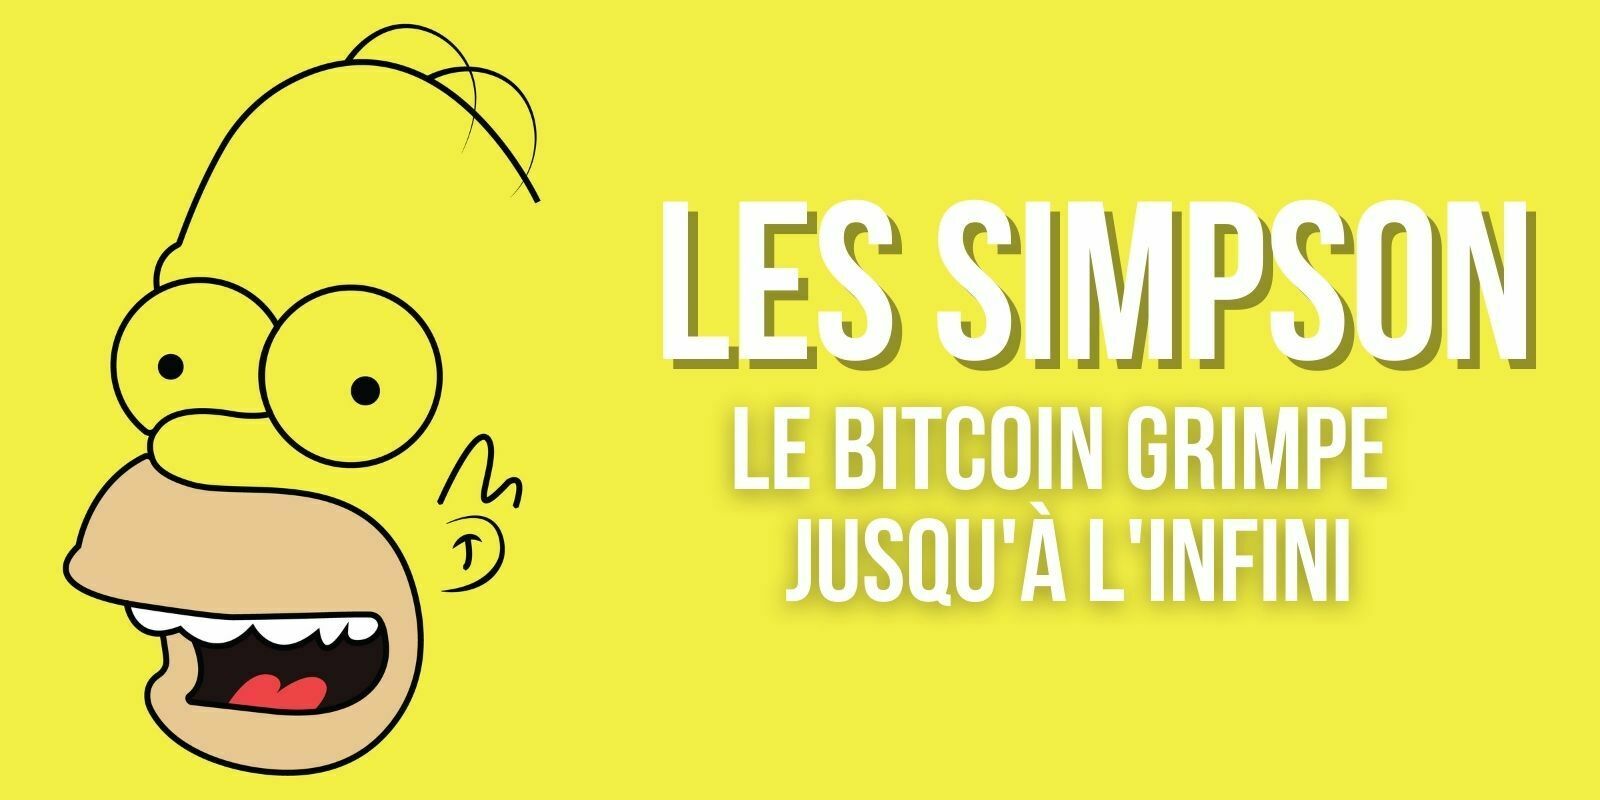 Un épisode des Simpson montre le bitcoin (BTC) grimpant jusqu'à l'infini